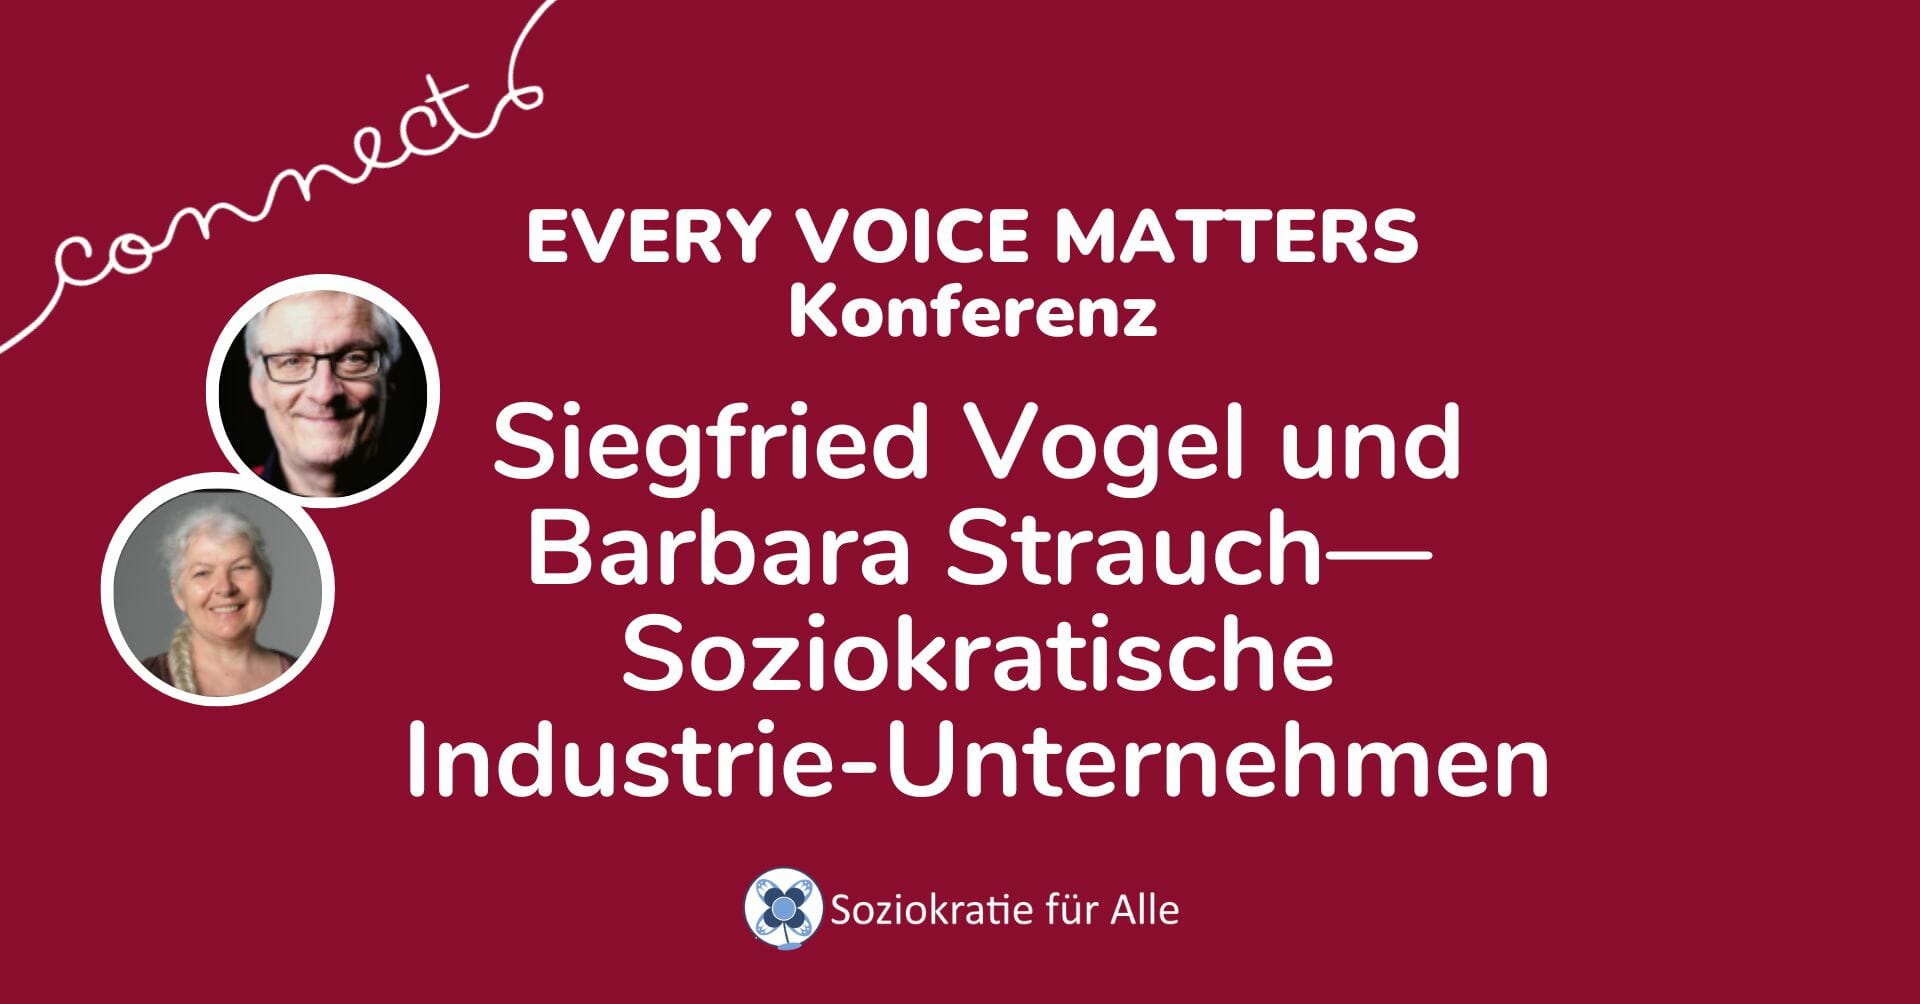 Siegfried Vogel und Barbara Strauch—Soziokratische Industrie-Unternehmen